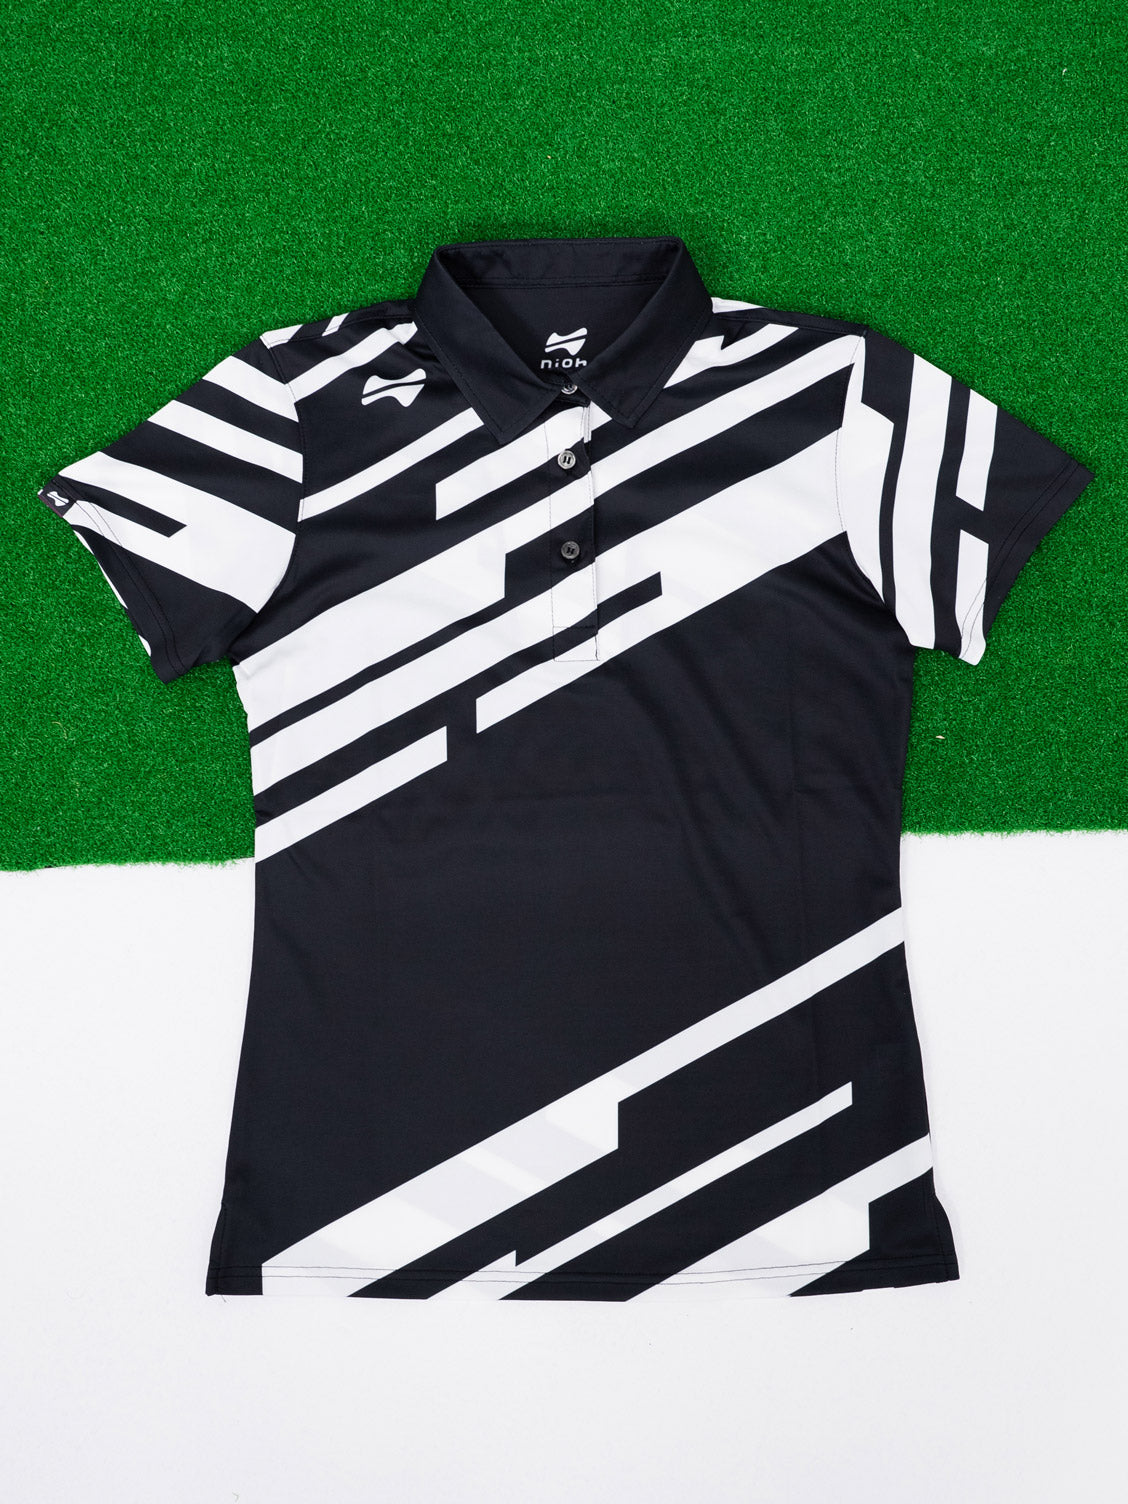 【お求めやすい価格になりました】レディーススラッシュゴルフ半袖ポロシャツ-ブラック